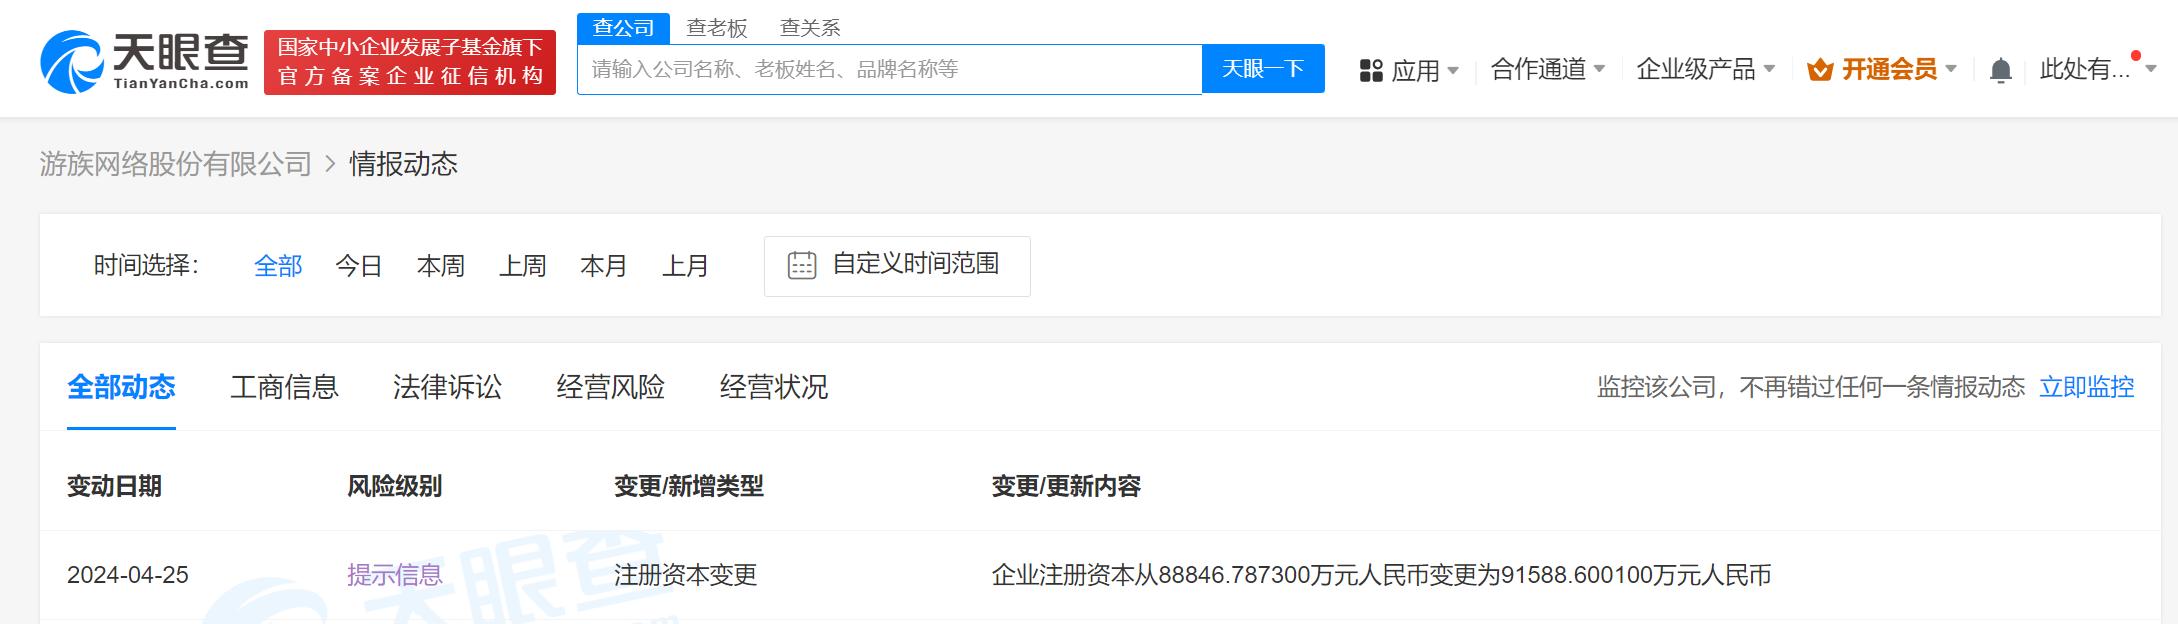 游族网络增资至9.16亿元